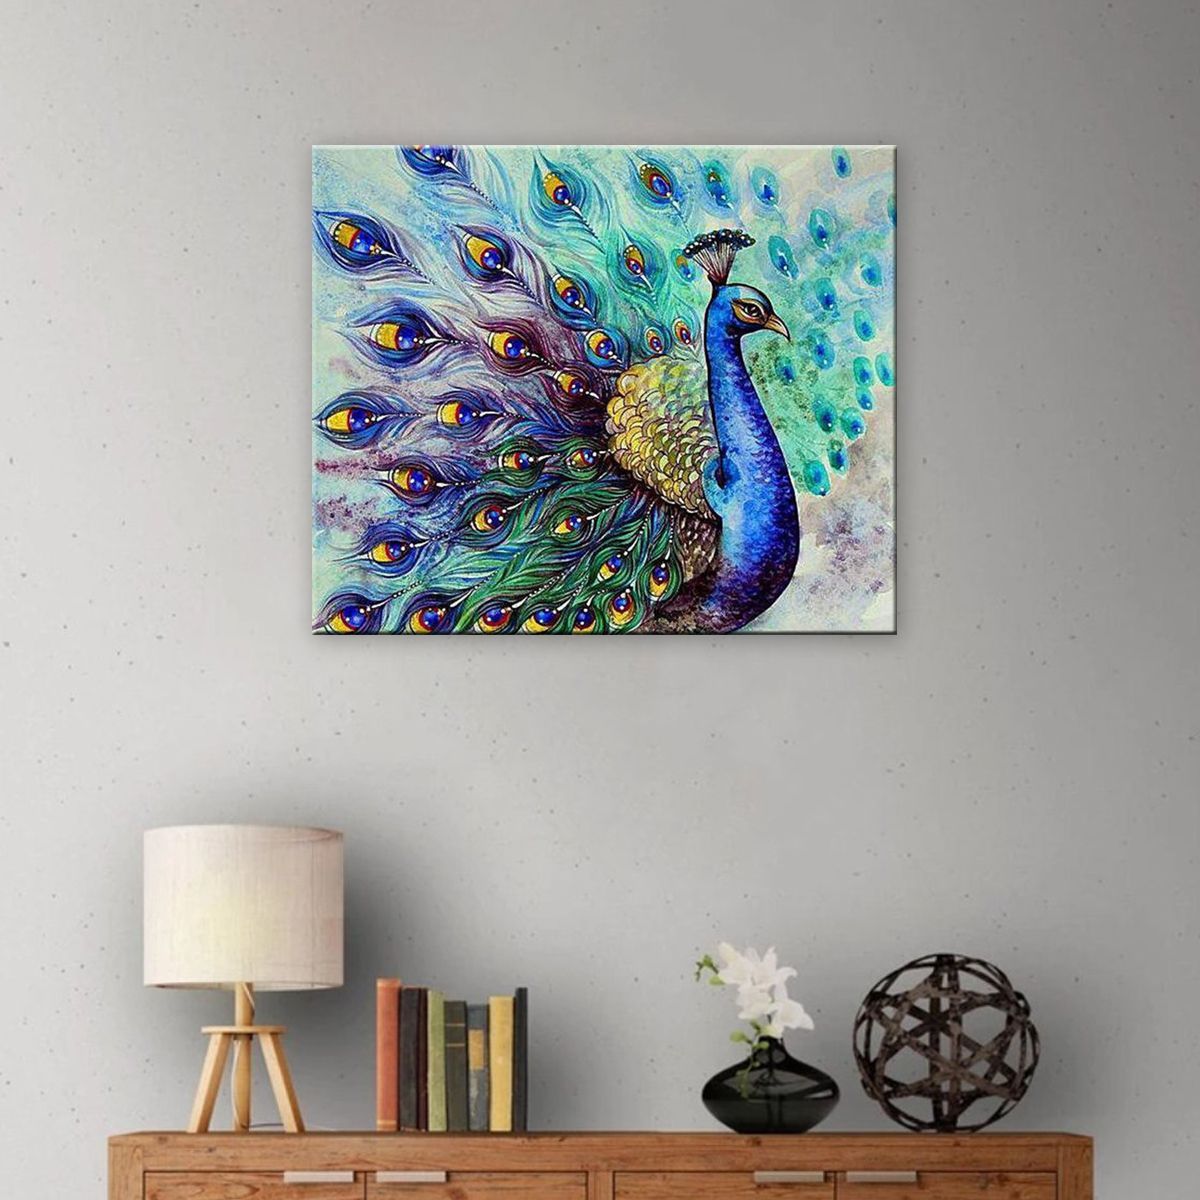 Peacock-Tail-5D-Diamond-DIY-Painting-Craft-Kit-Home-Decor-1752106